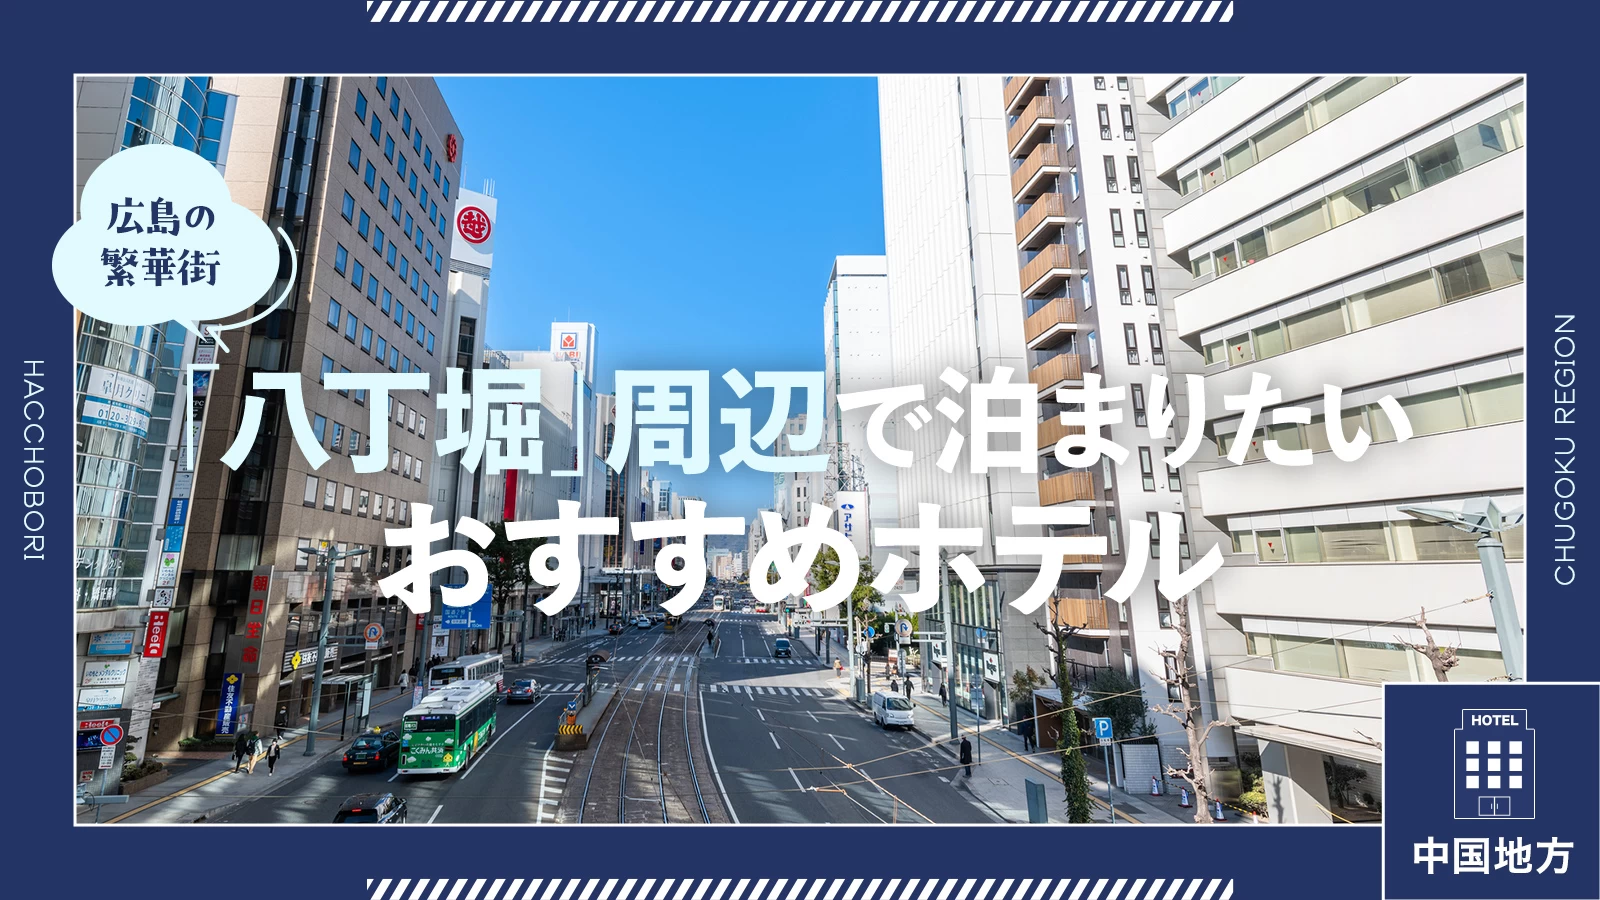 【中国地方】広島の繁華街「八丁堀」周辺で泊まりたいおすすめホテル4選